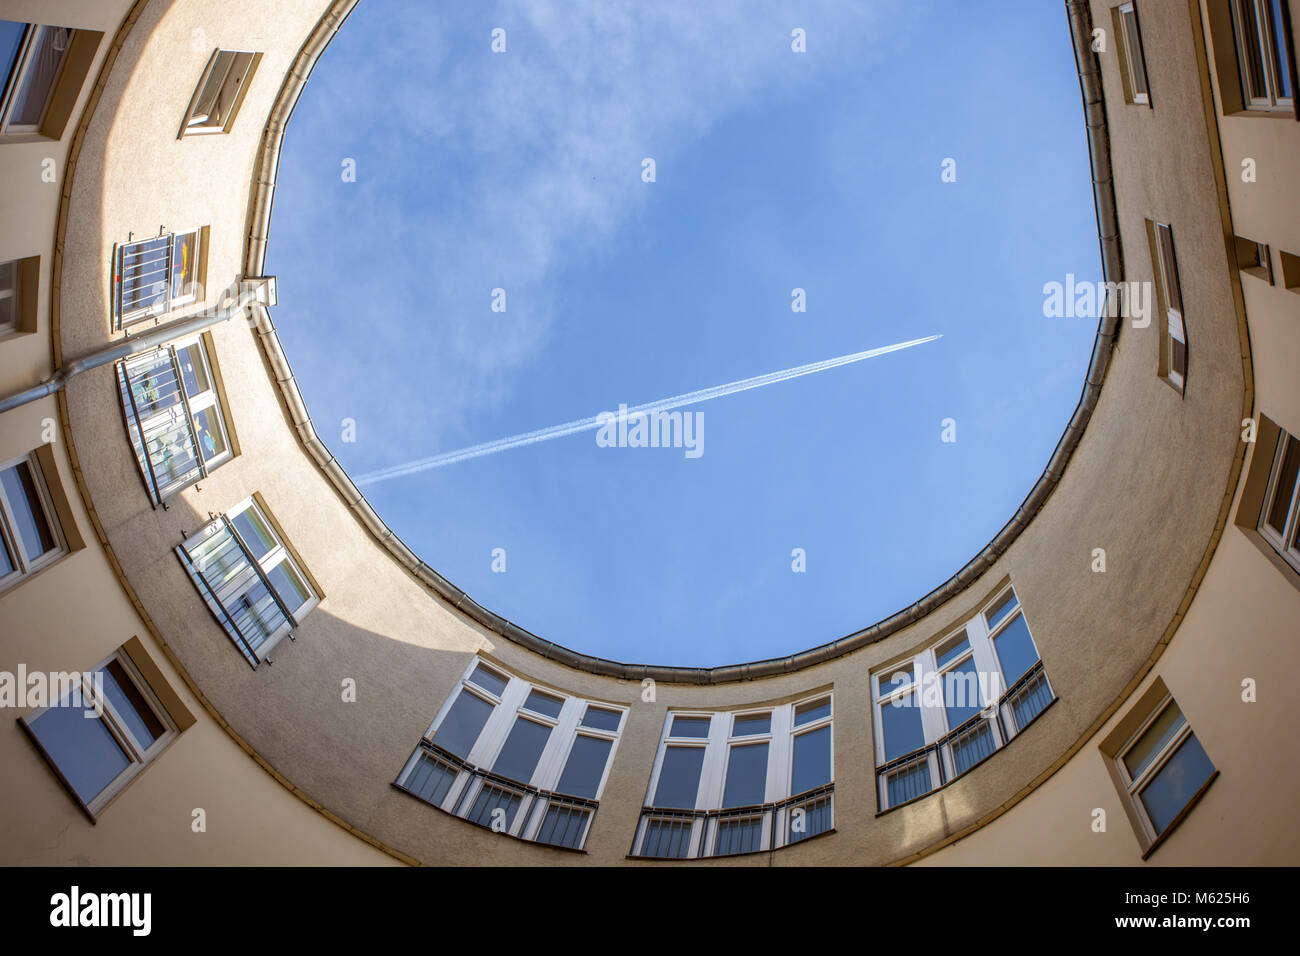 Avion survolant l'ouverture d'un jardin en laissant une traînée de condensation. Berlin, Allemagne, Europe. Banque D'Images